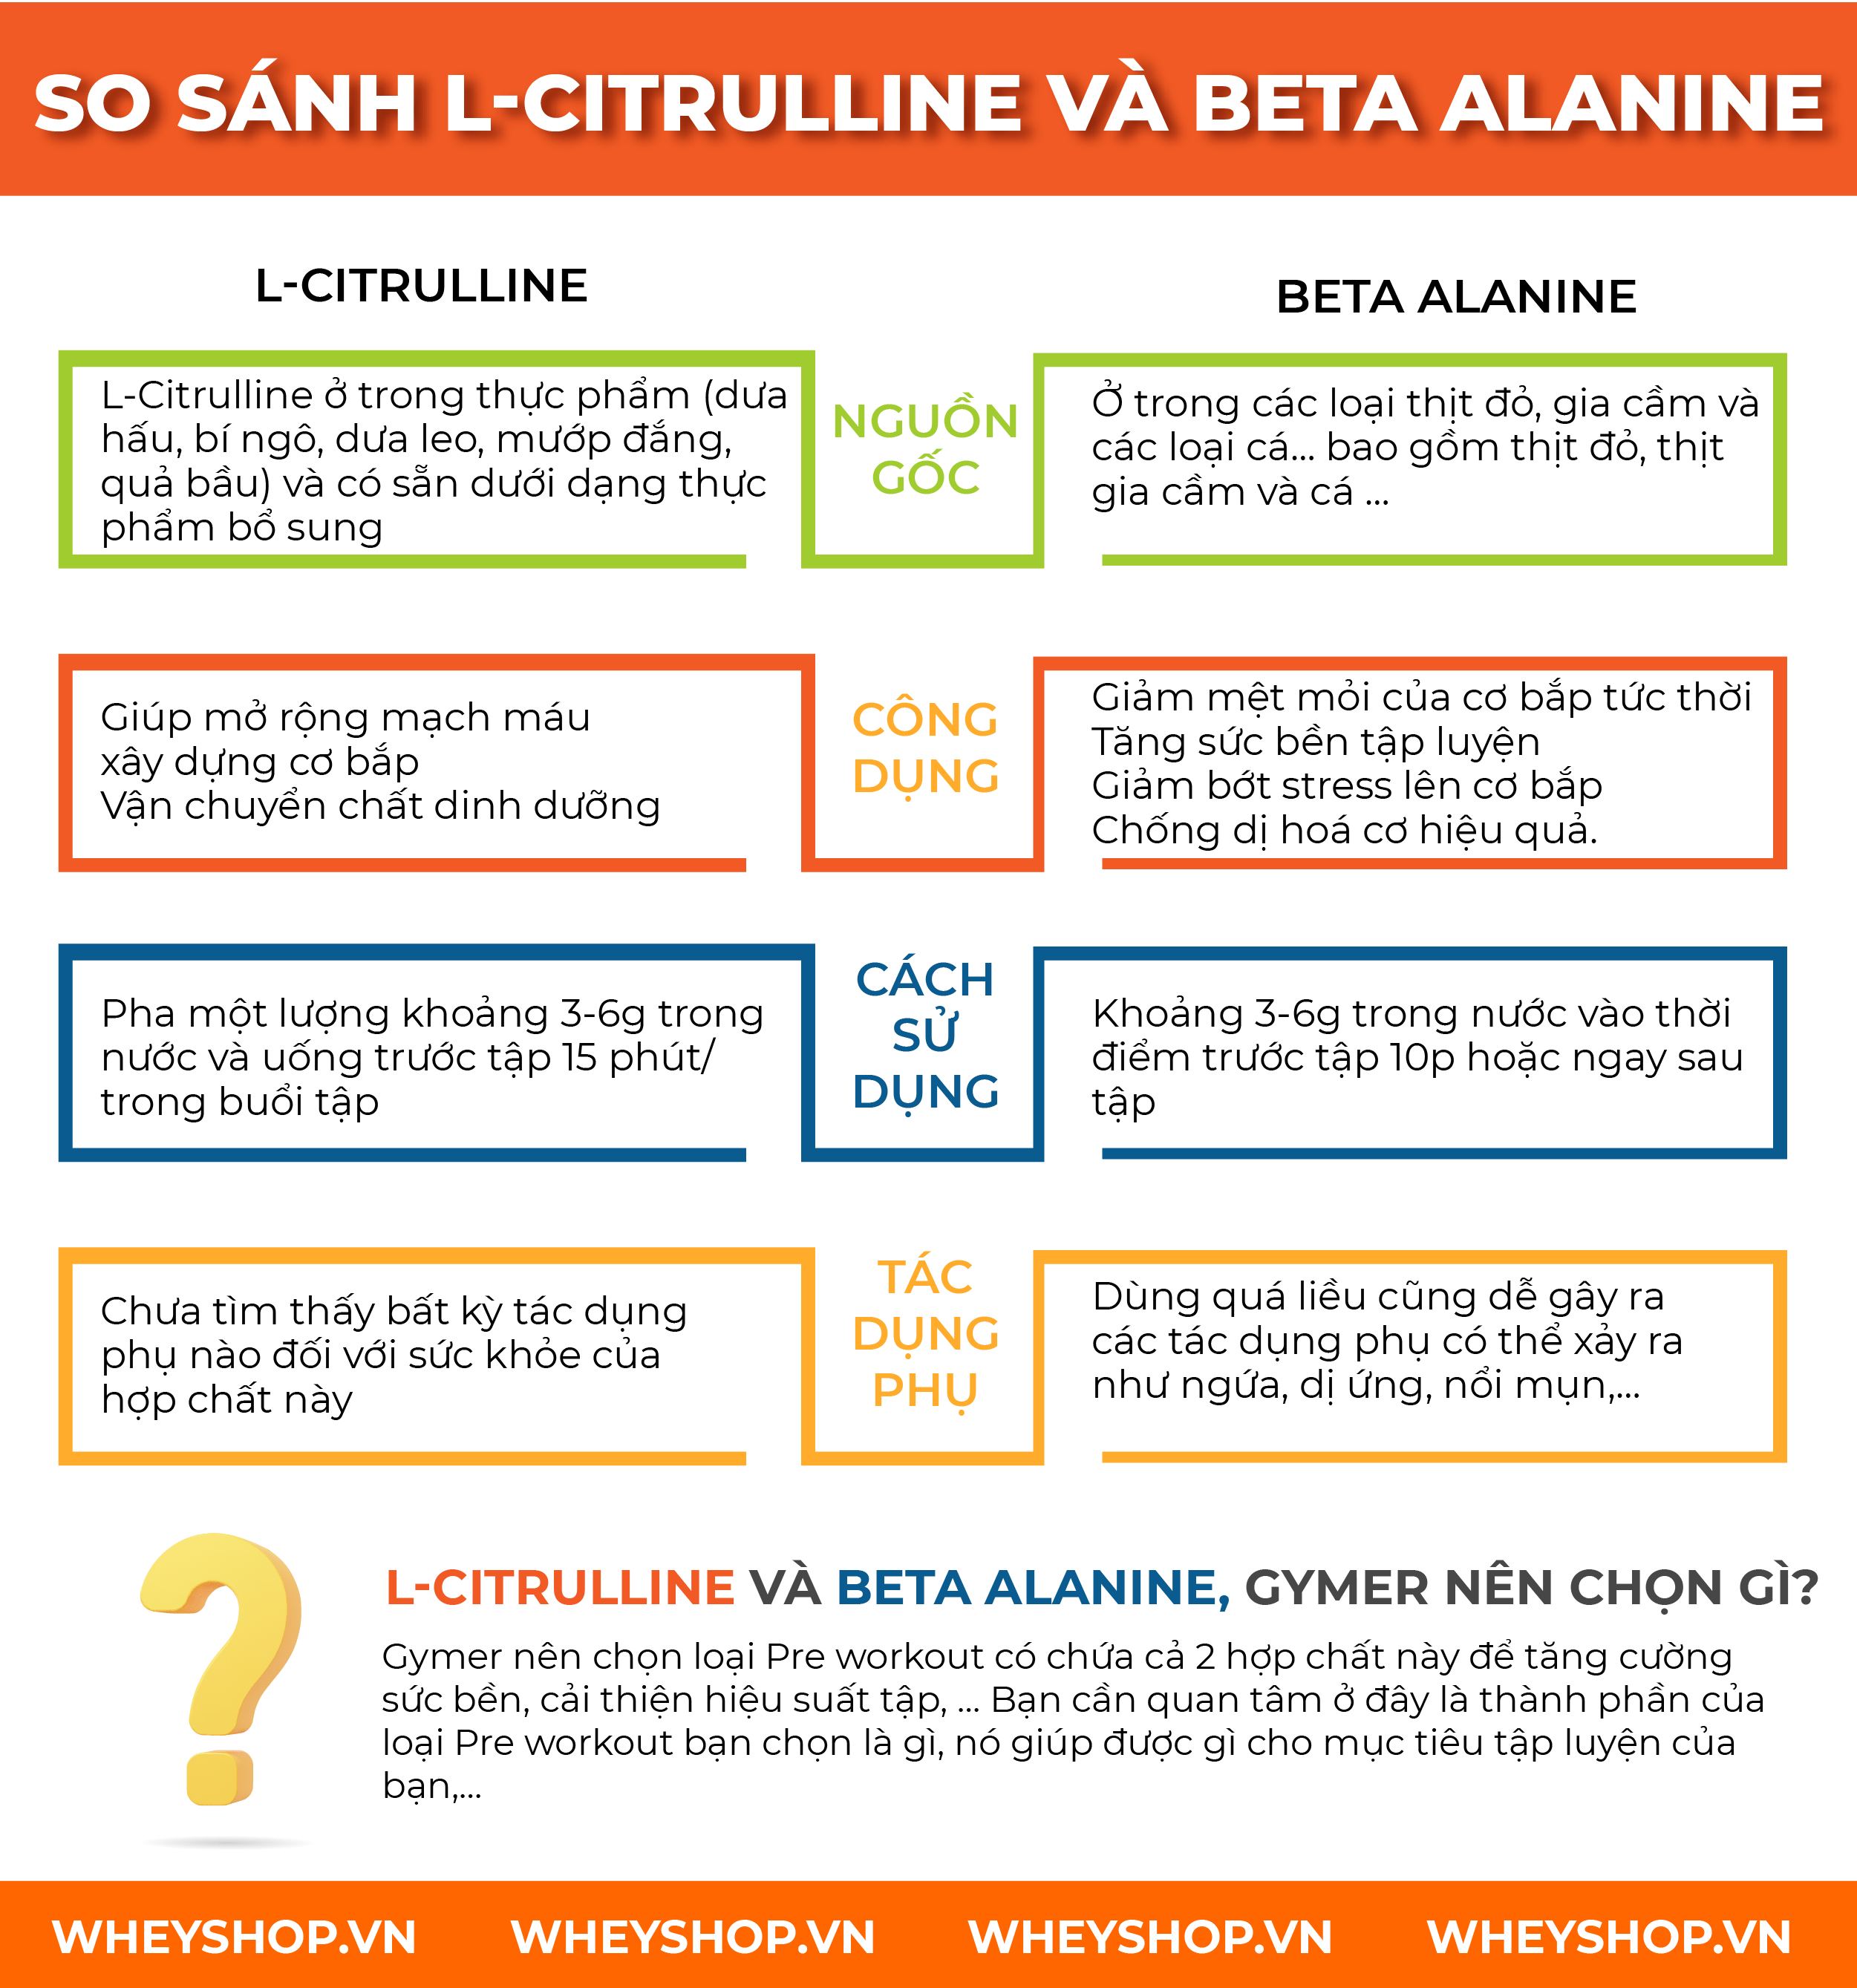 Nếu bạn đang băn khoăn chưa biết nên lựa chọn gì giữa L-Citrulline và Beta Alanine thì hãy cùng WheyShop tham khảo qua bài viết ngay nhé...